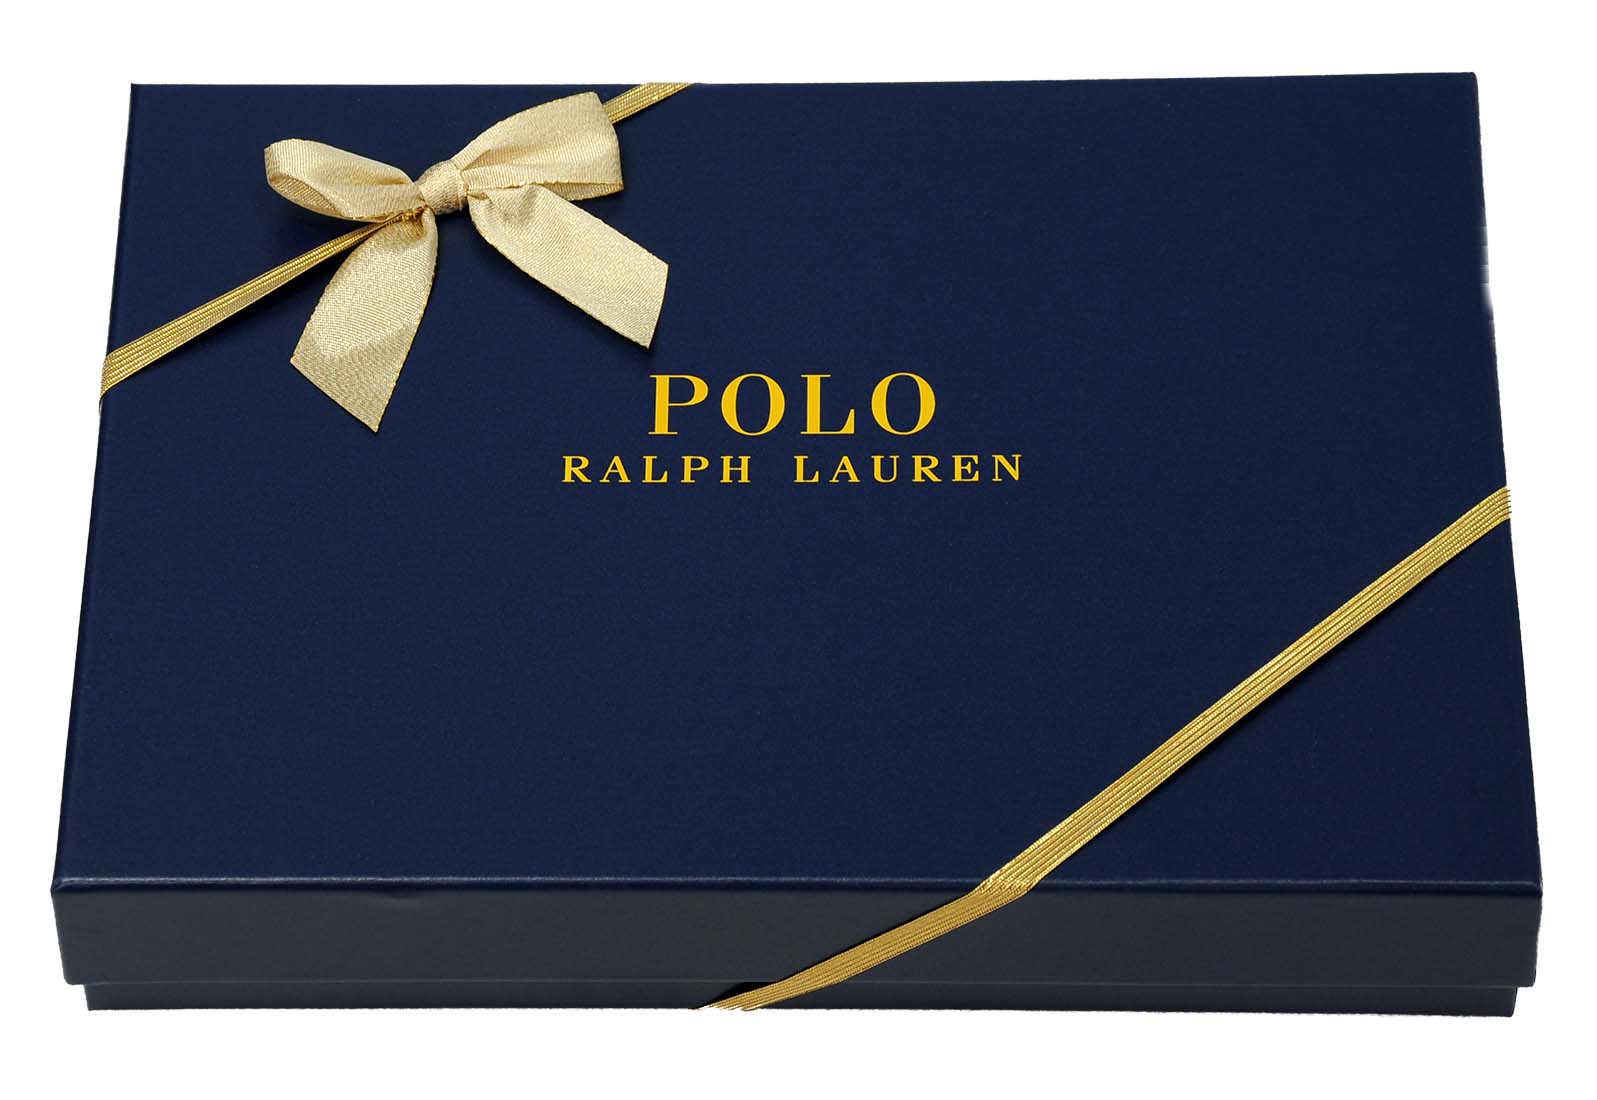 ラルフローレンギフトボックスPOLO Ralph Lauren Gift Box父の日ギフト プレゼント誕生日プレゼント